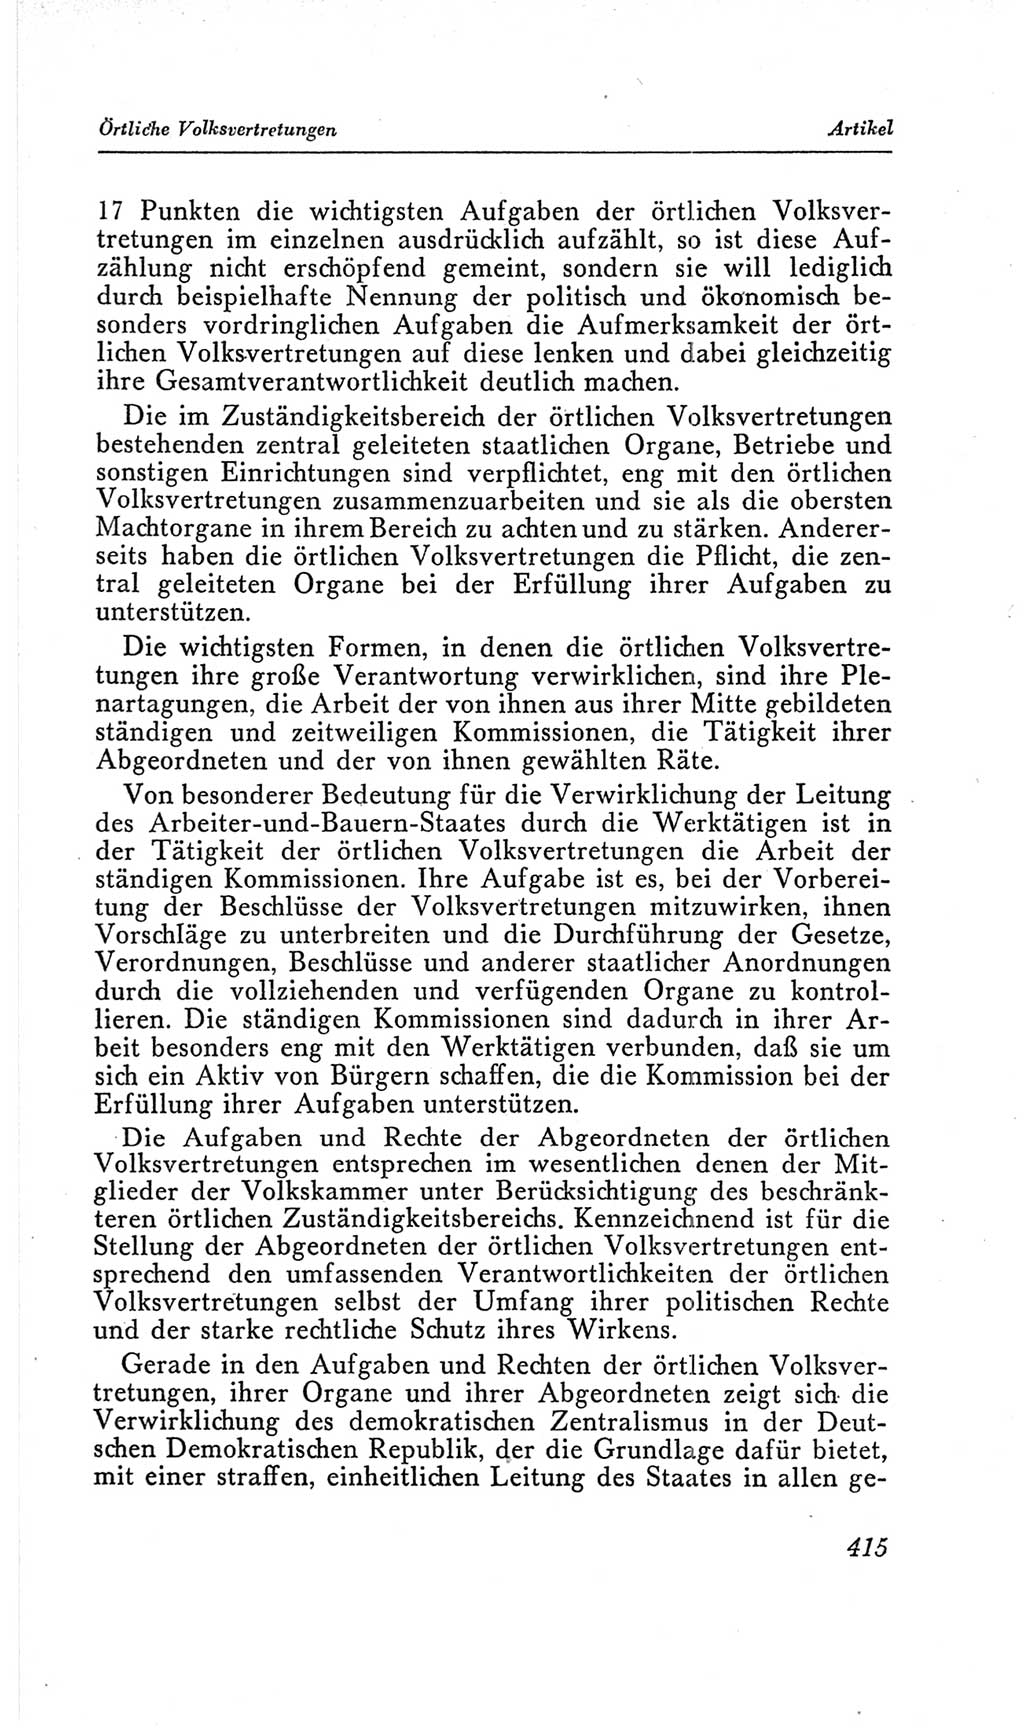 Handbuch der Volkskammer (VK) der Deutschen Demokratischen Republik (DDR), 2. Wahlperiode 1954-1958, Seite 415 (Hdb. VK. DDR, 2. WP. 1954-1958, S. 415)